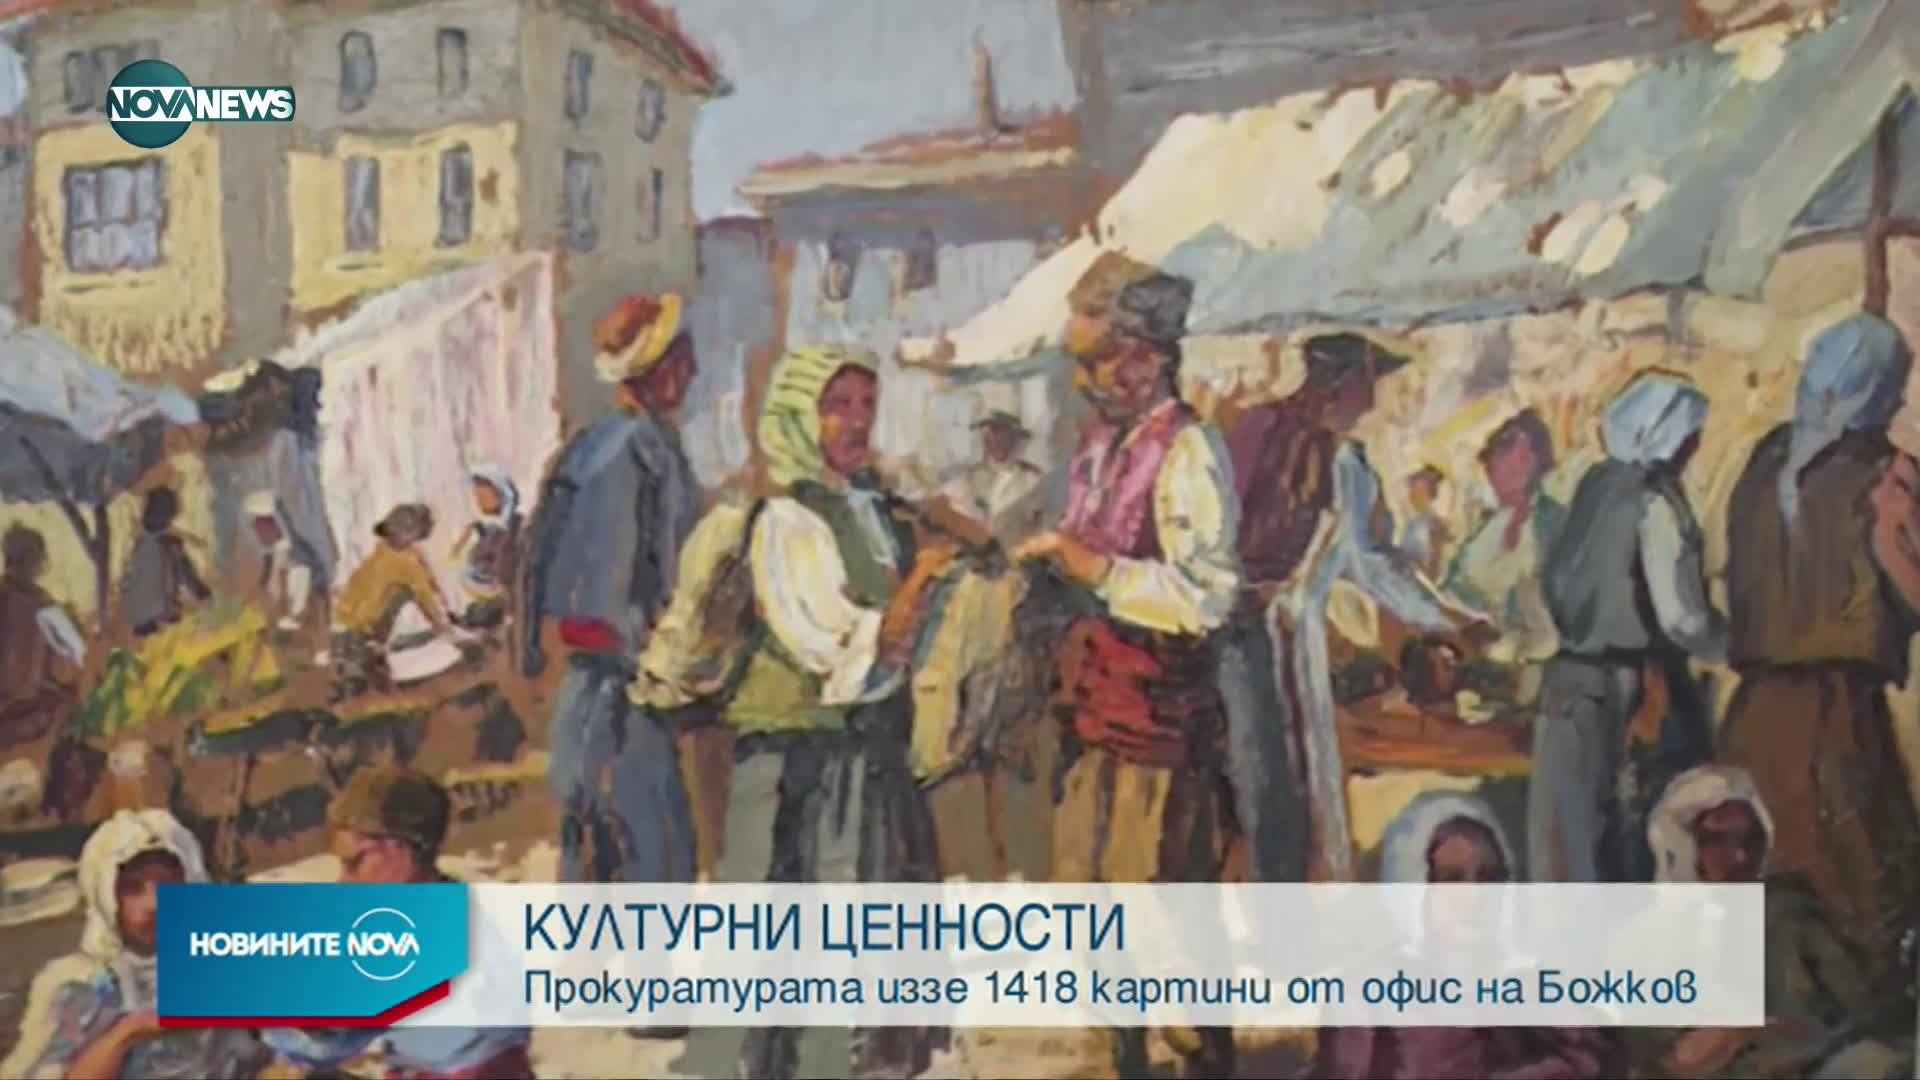 Иззеха още 1418 картини и 45 графики от офис на Божков